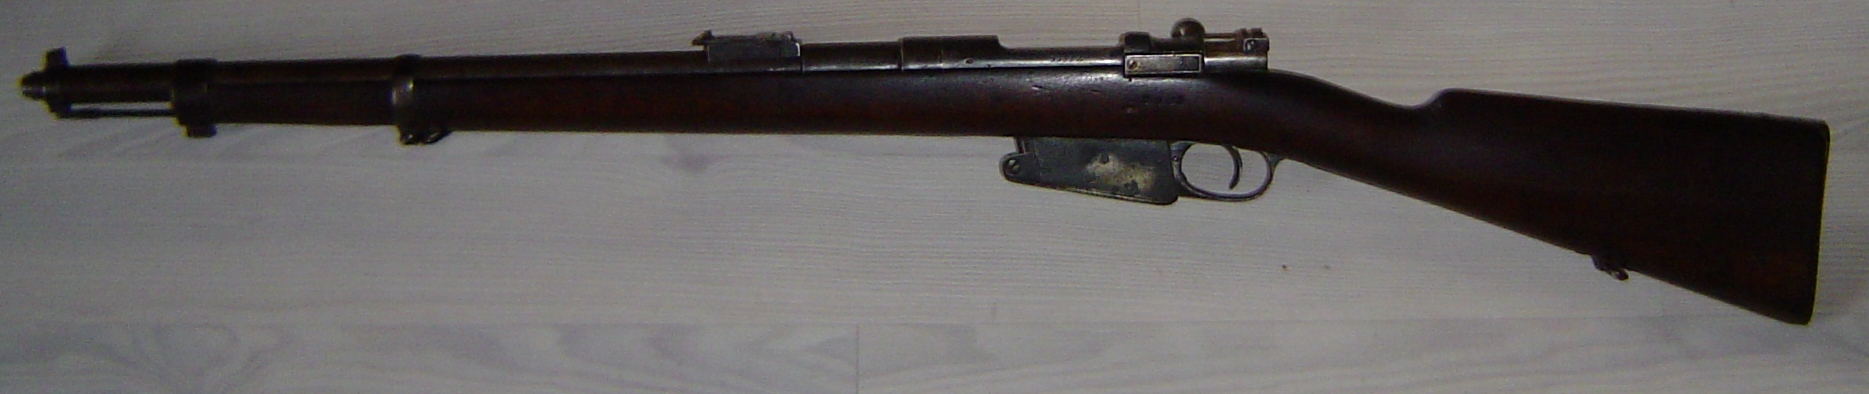 Carabine modle 1889 avec baonnette